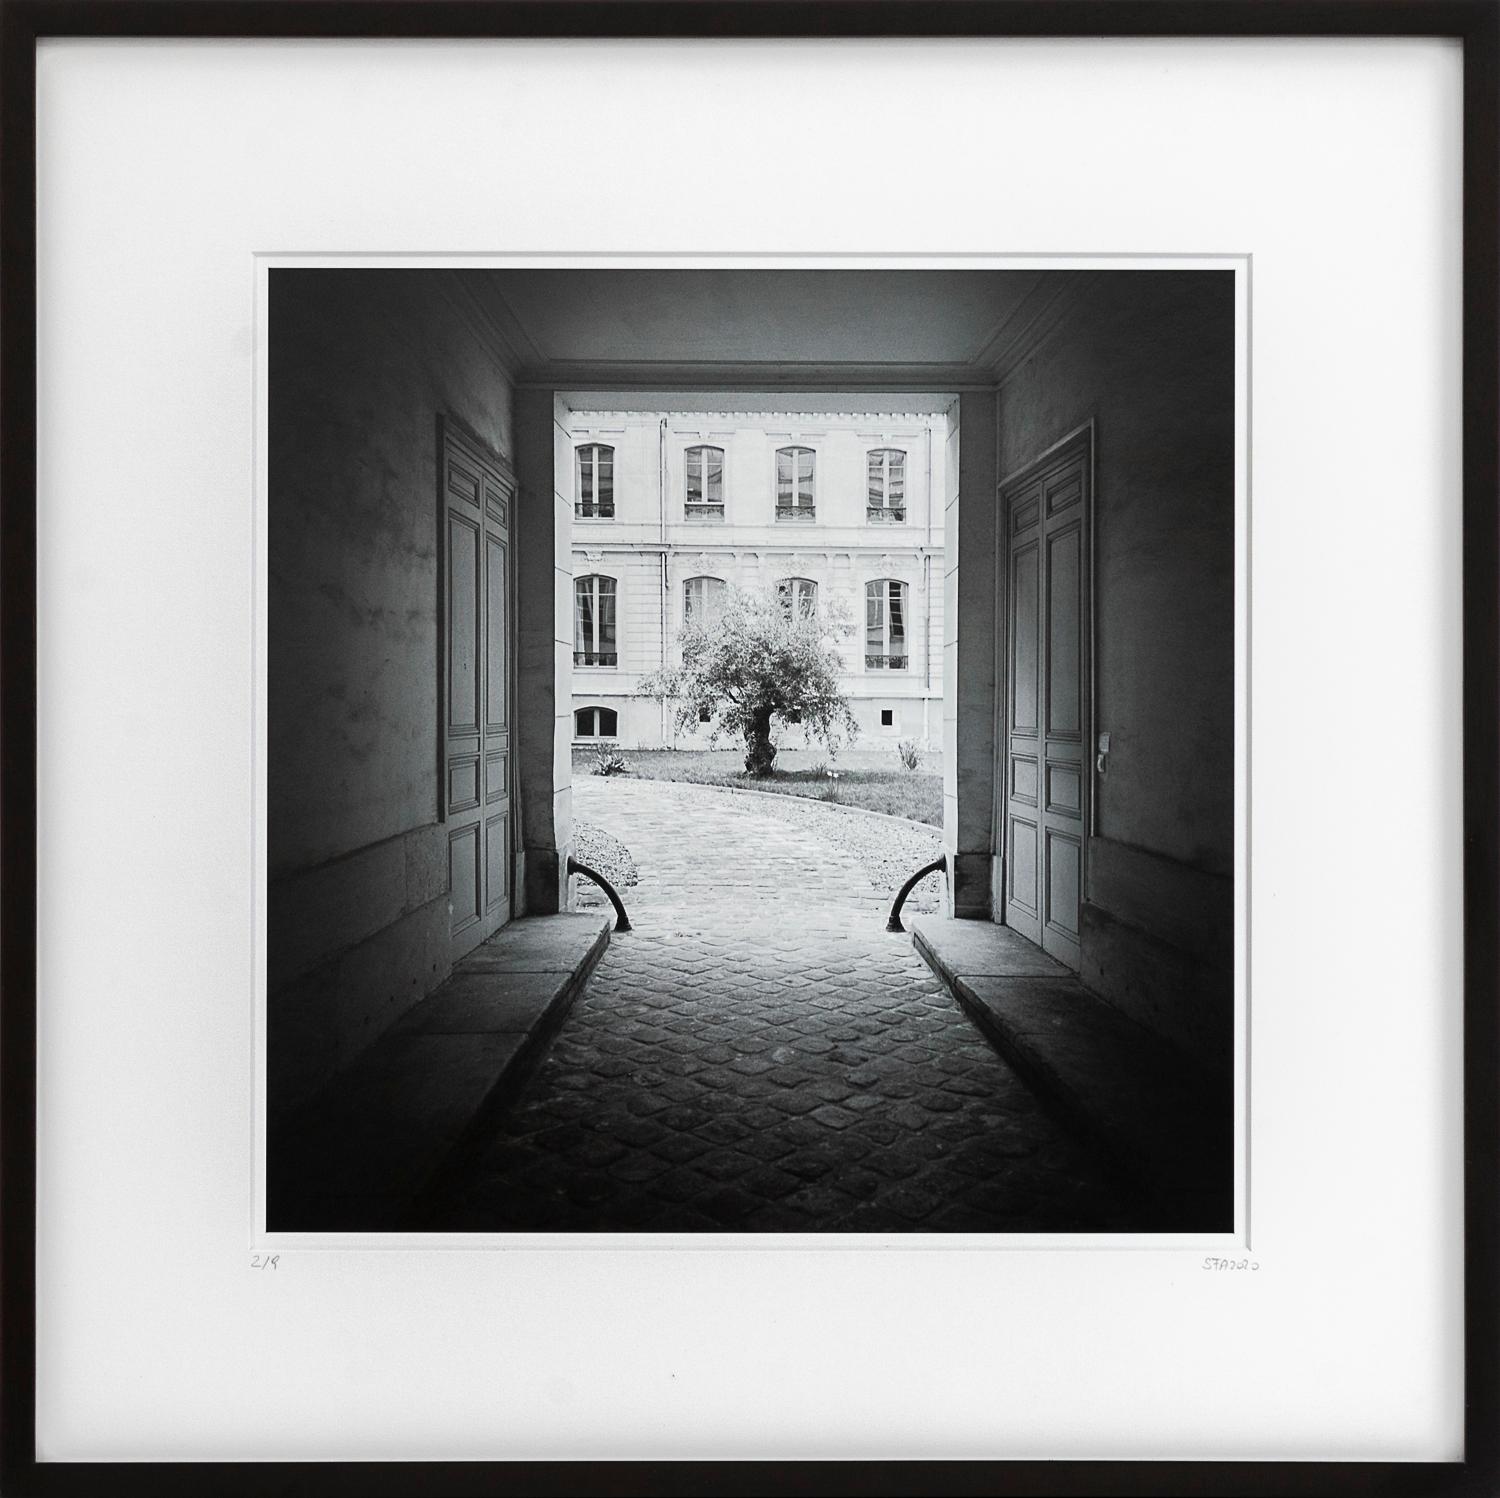 Landscape Photograph Gerald Berghammer - Tree in the Courtyard, Paris, photographie en noir et blanc, impression pigmentaire, encadrée